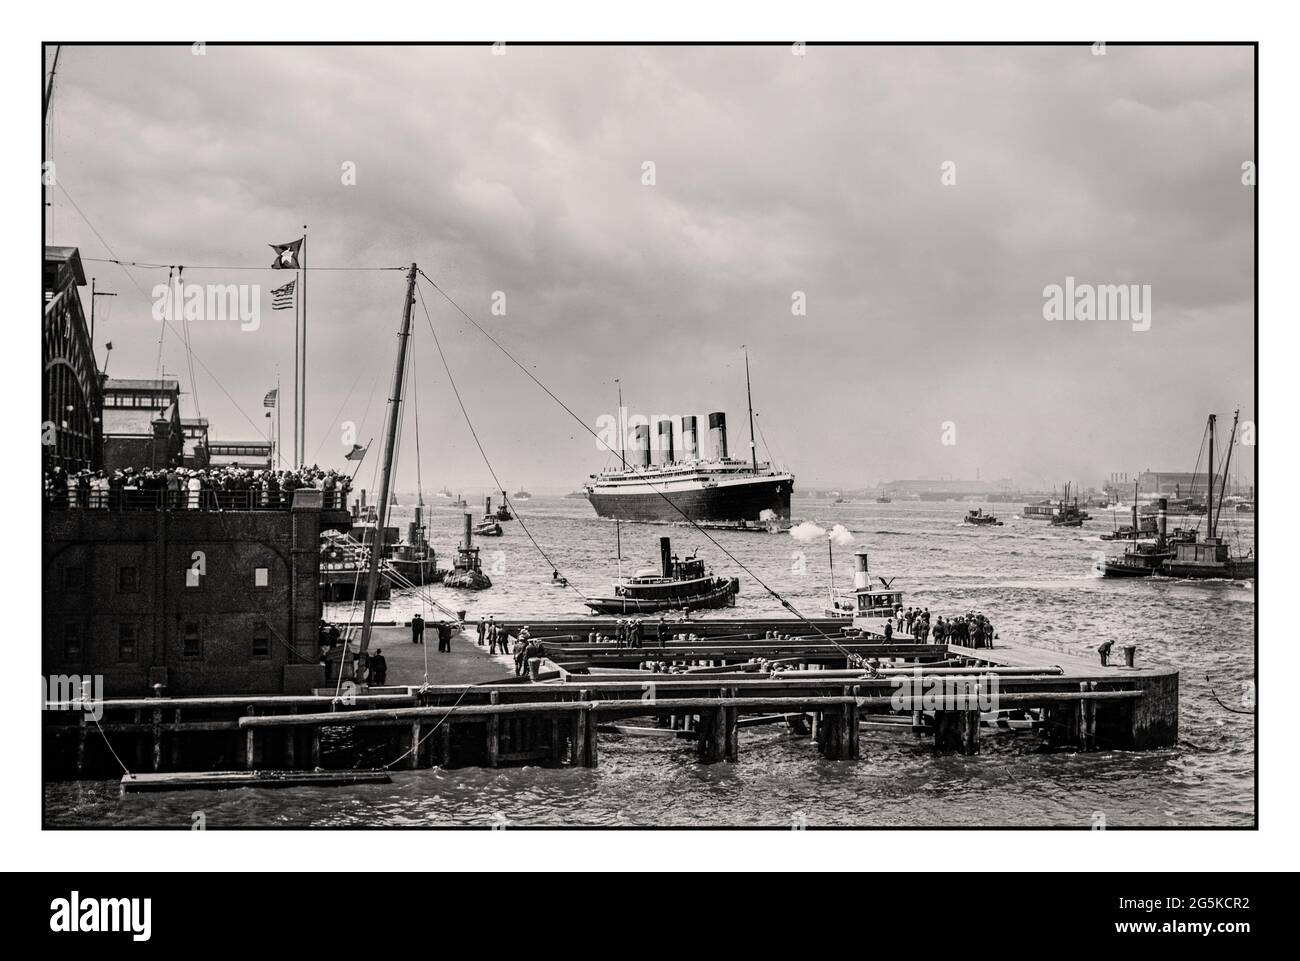 Arrivo RMS OLYMPIC 1911 attracco folle Torg Boats New York Harbor USA Bain News Service, editore 1911 nave a vapore sorella di RMS Titanic White Star Line Four Funnel nave a vapore transatlantica di lusso Ocean Liner del 1900 Foto Stock